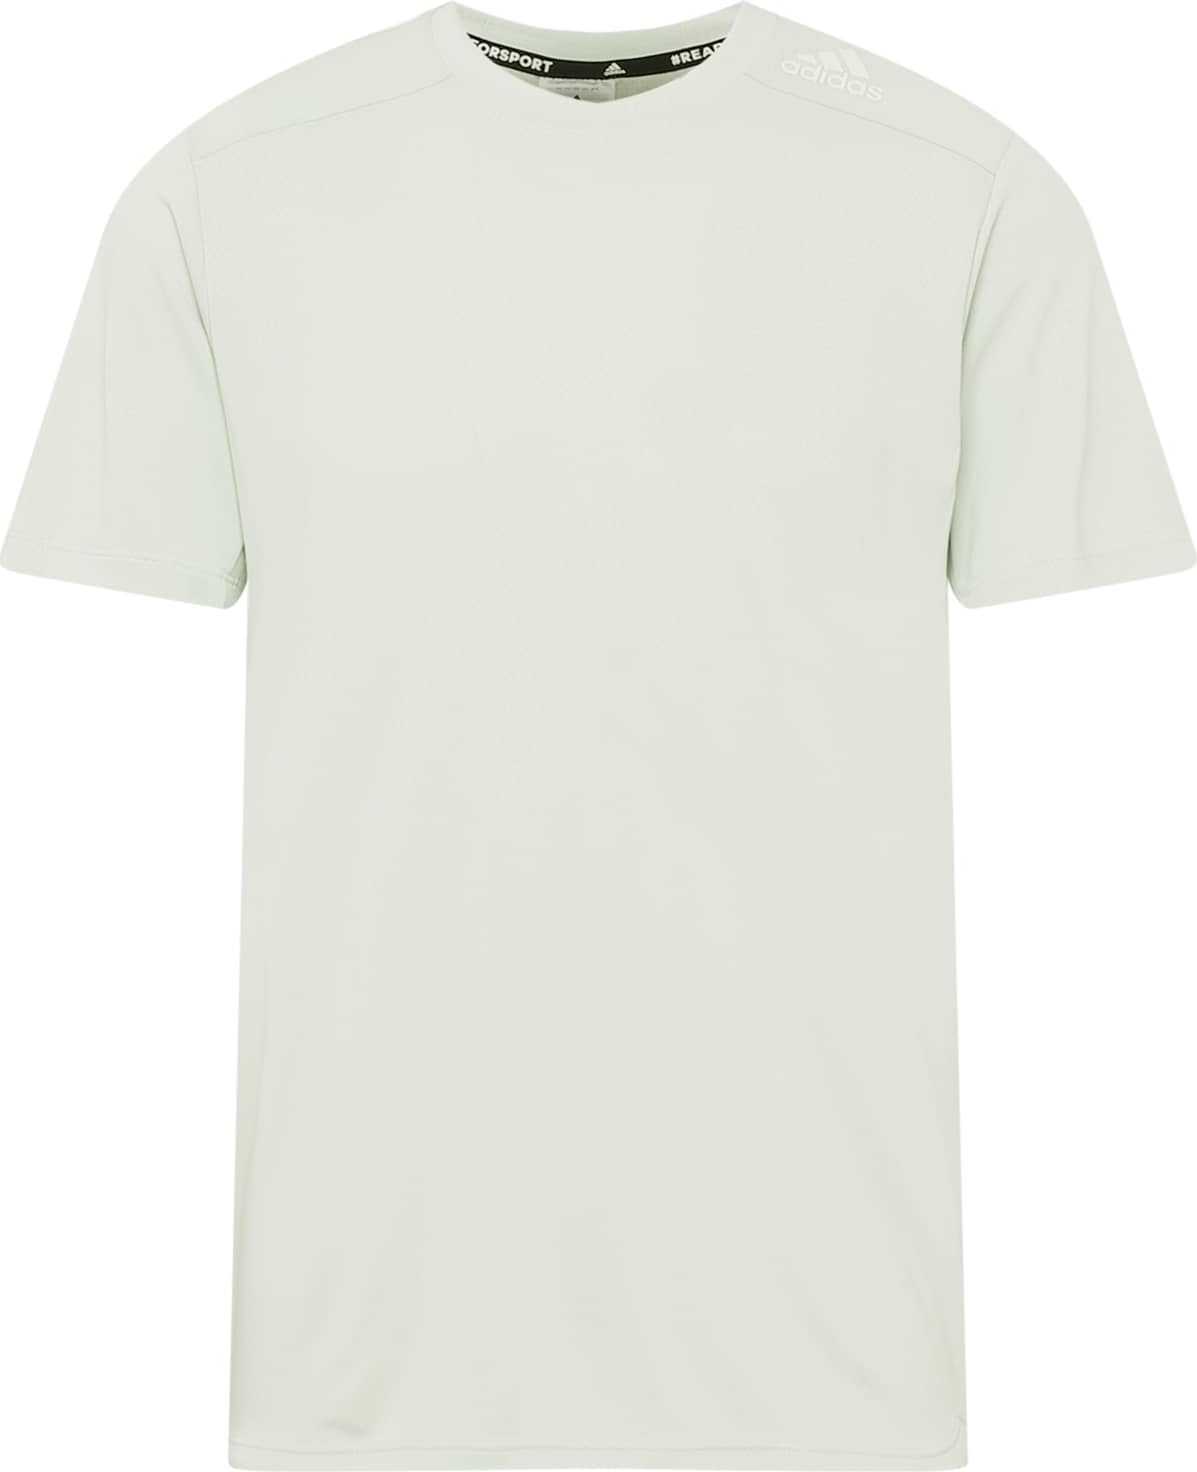 ADIDAS SPORTSWEAR Funkční tričko mátová / bílá